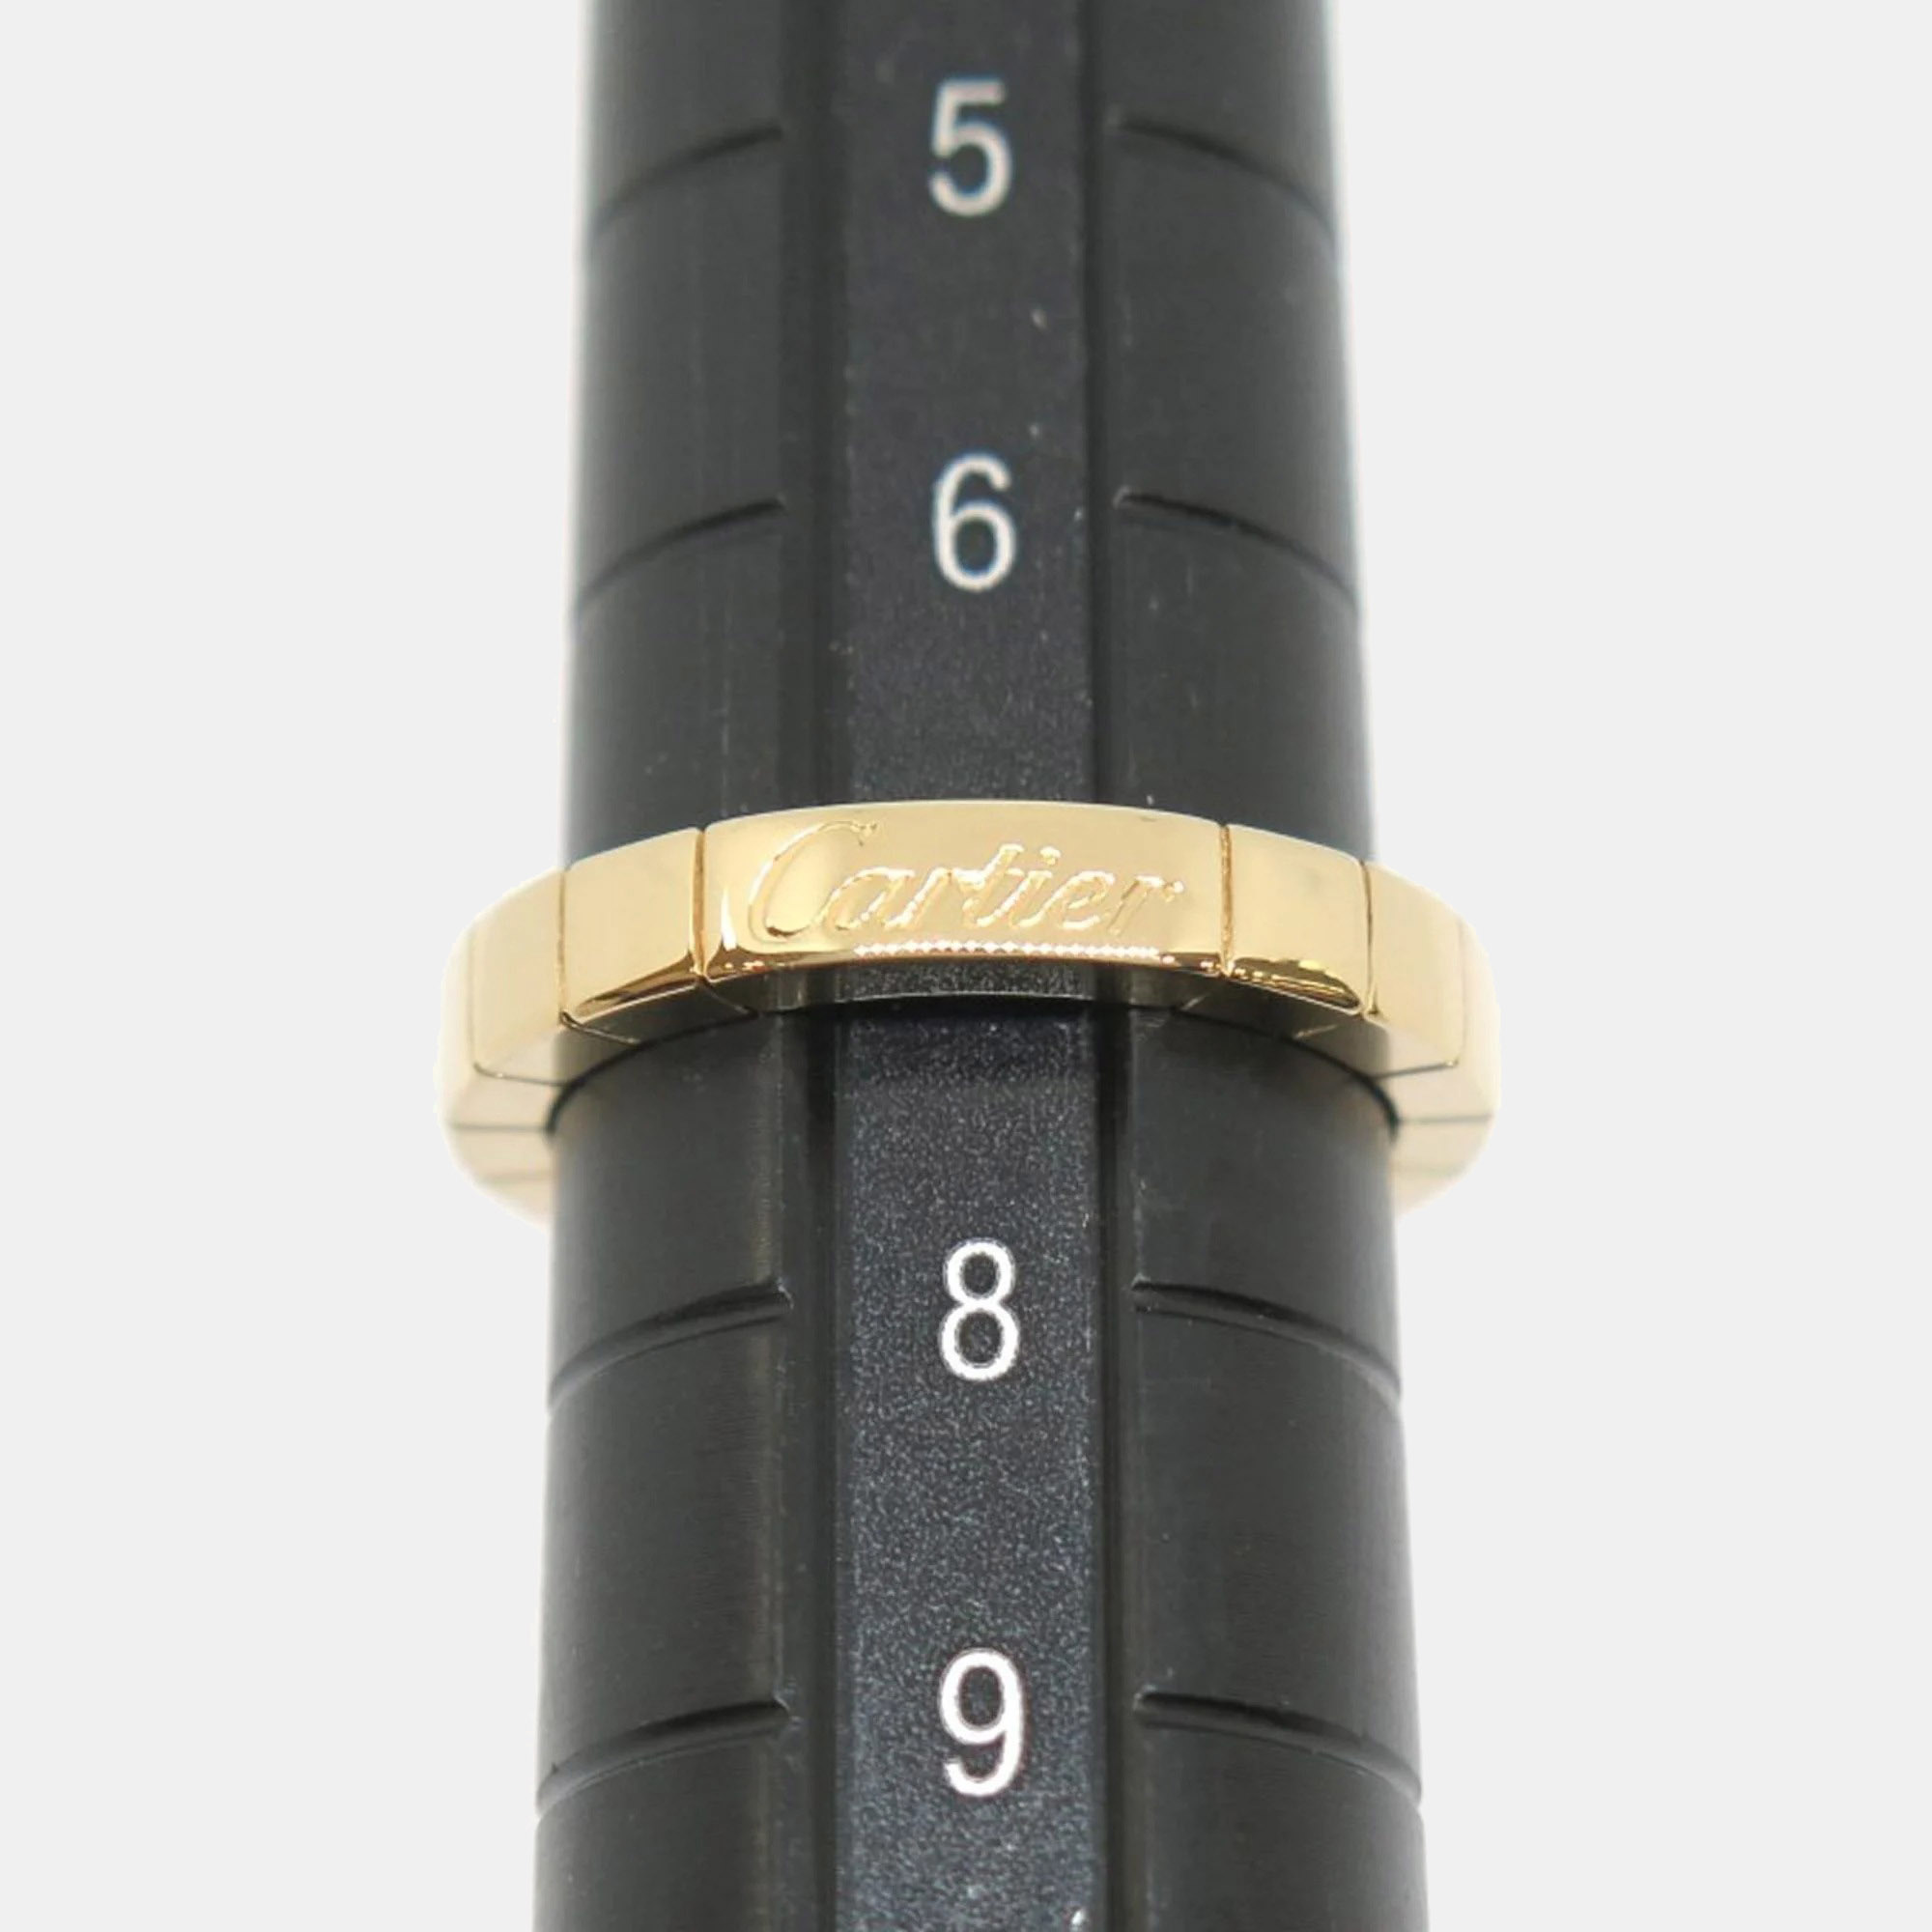 Cartier Lanieres 18K Yellow Gold  Ring EU 47